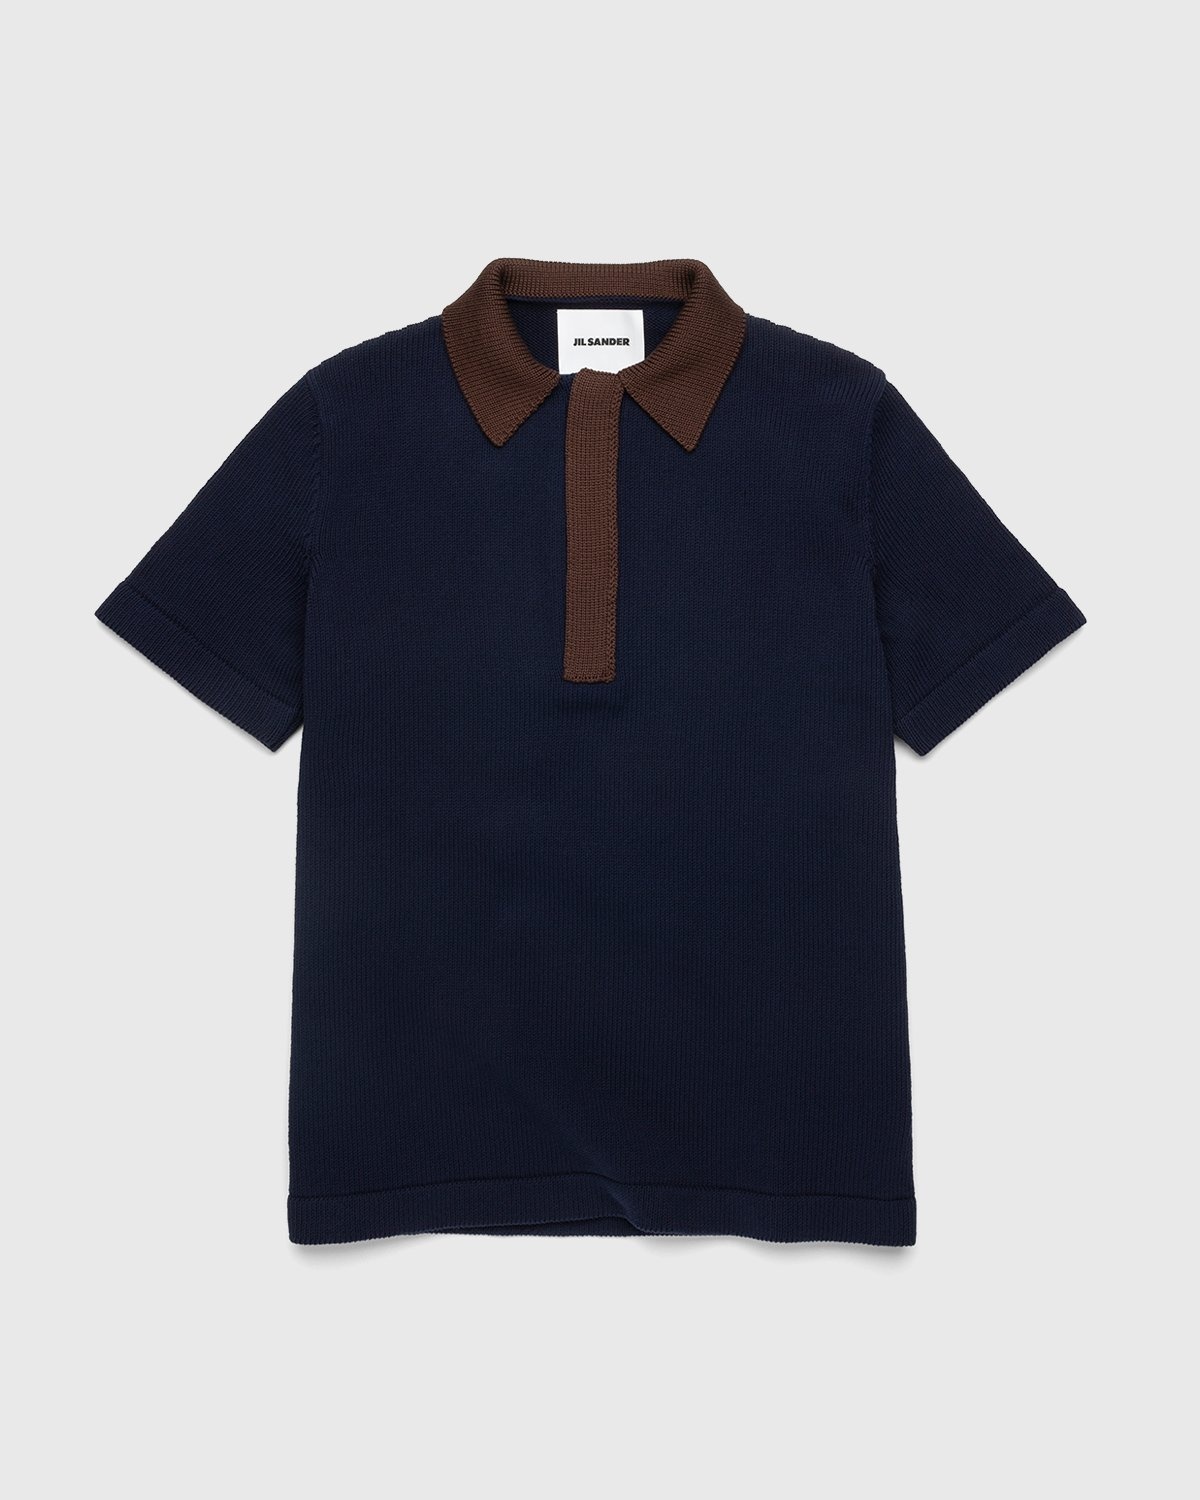 Jil Sander – Short Sleeve Knit Shirt Dark Blue - Polos - Blue - Image 1